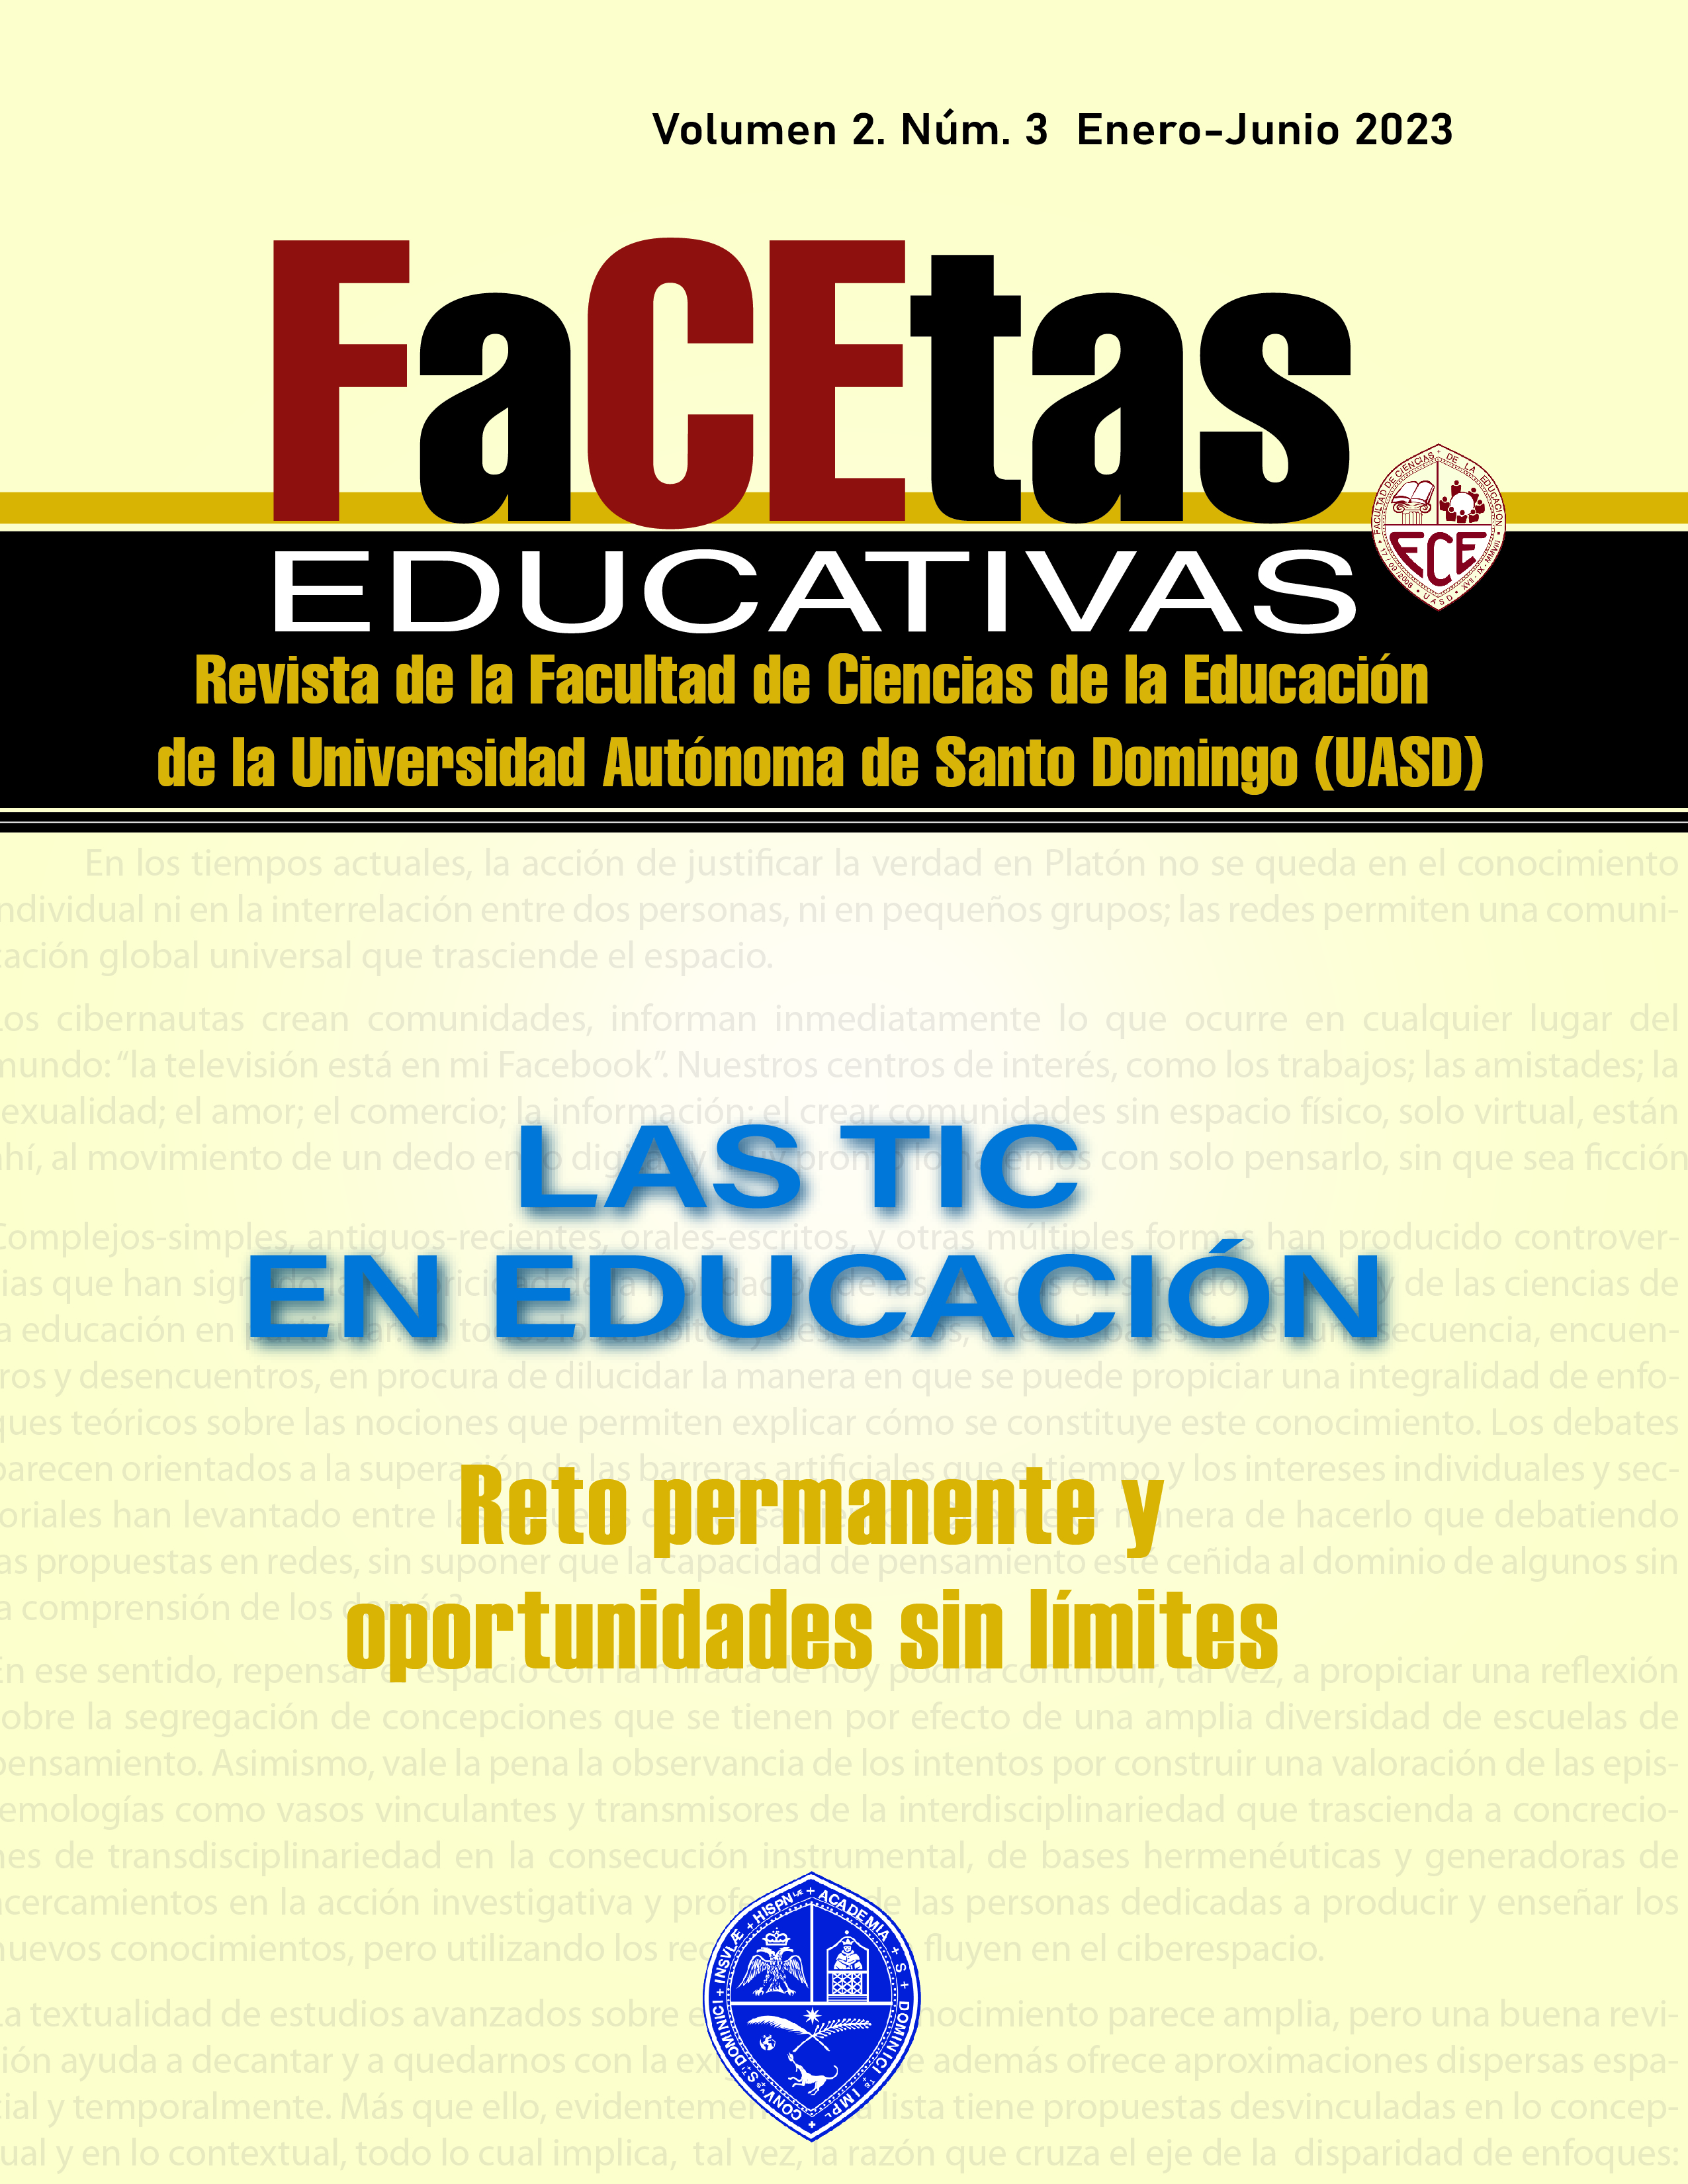 					View Vol. 2 No. 3 (2023): FACETAS EDUCATIVAS, LAS TIC EN LA EDUCACIÓN
				